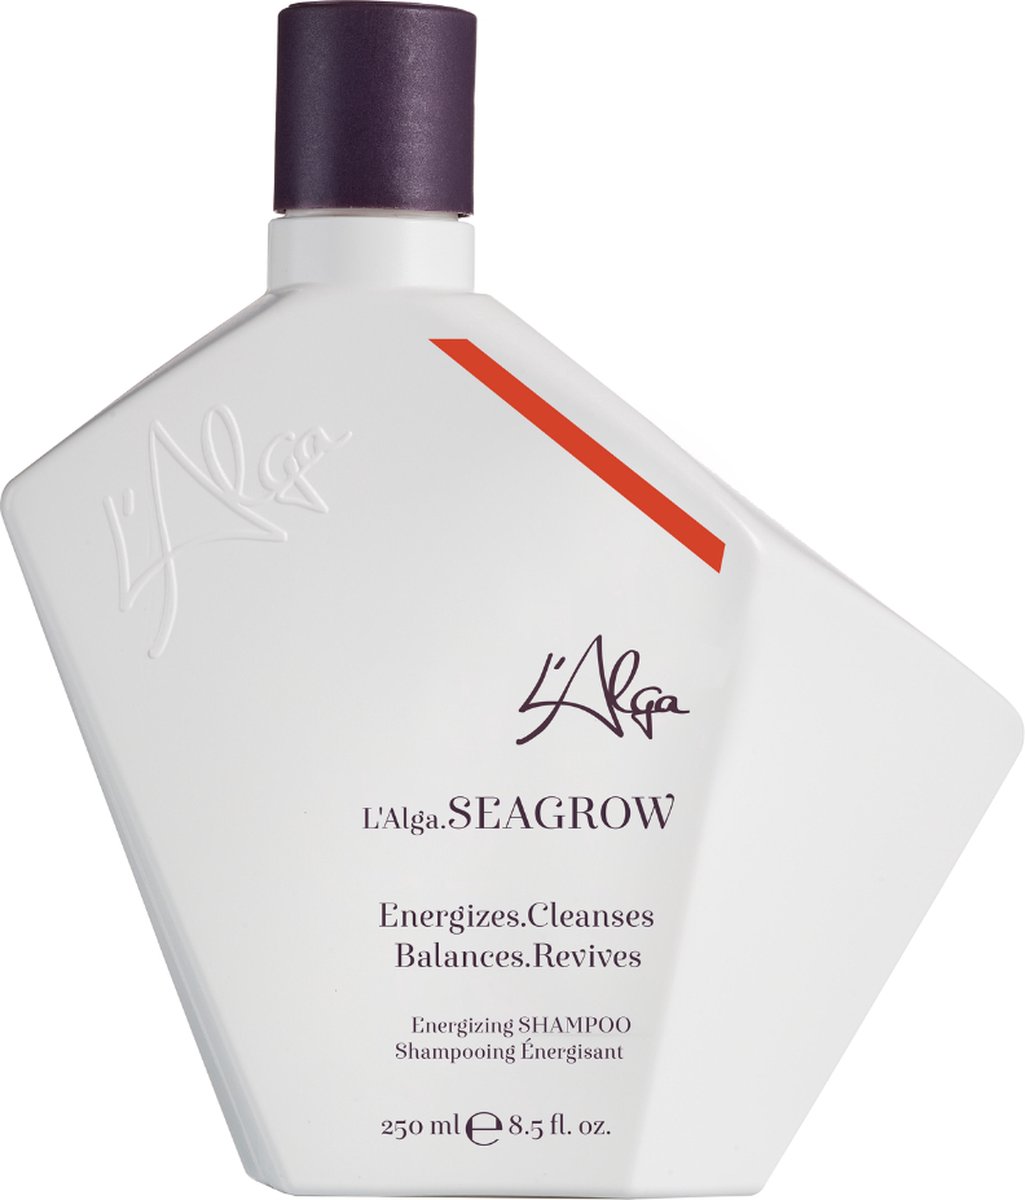 L'Alga SeaGrow Shampoo 250 ml - vrouwen - Voor Gevoelige hoofdhuid/Normaal haar